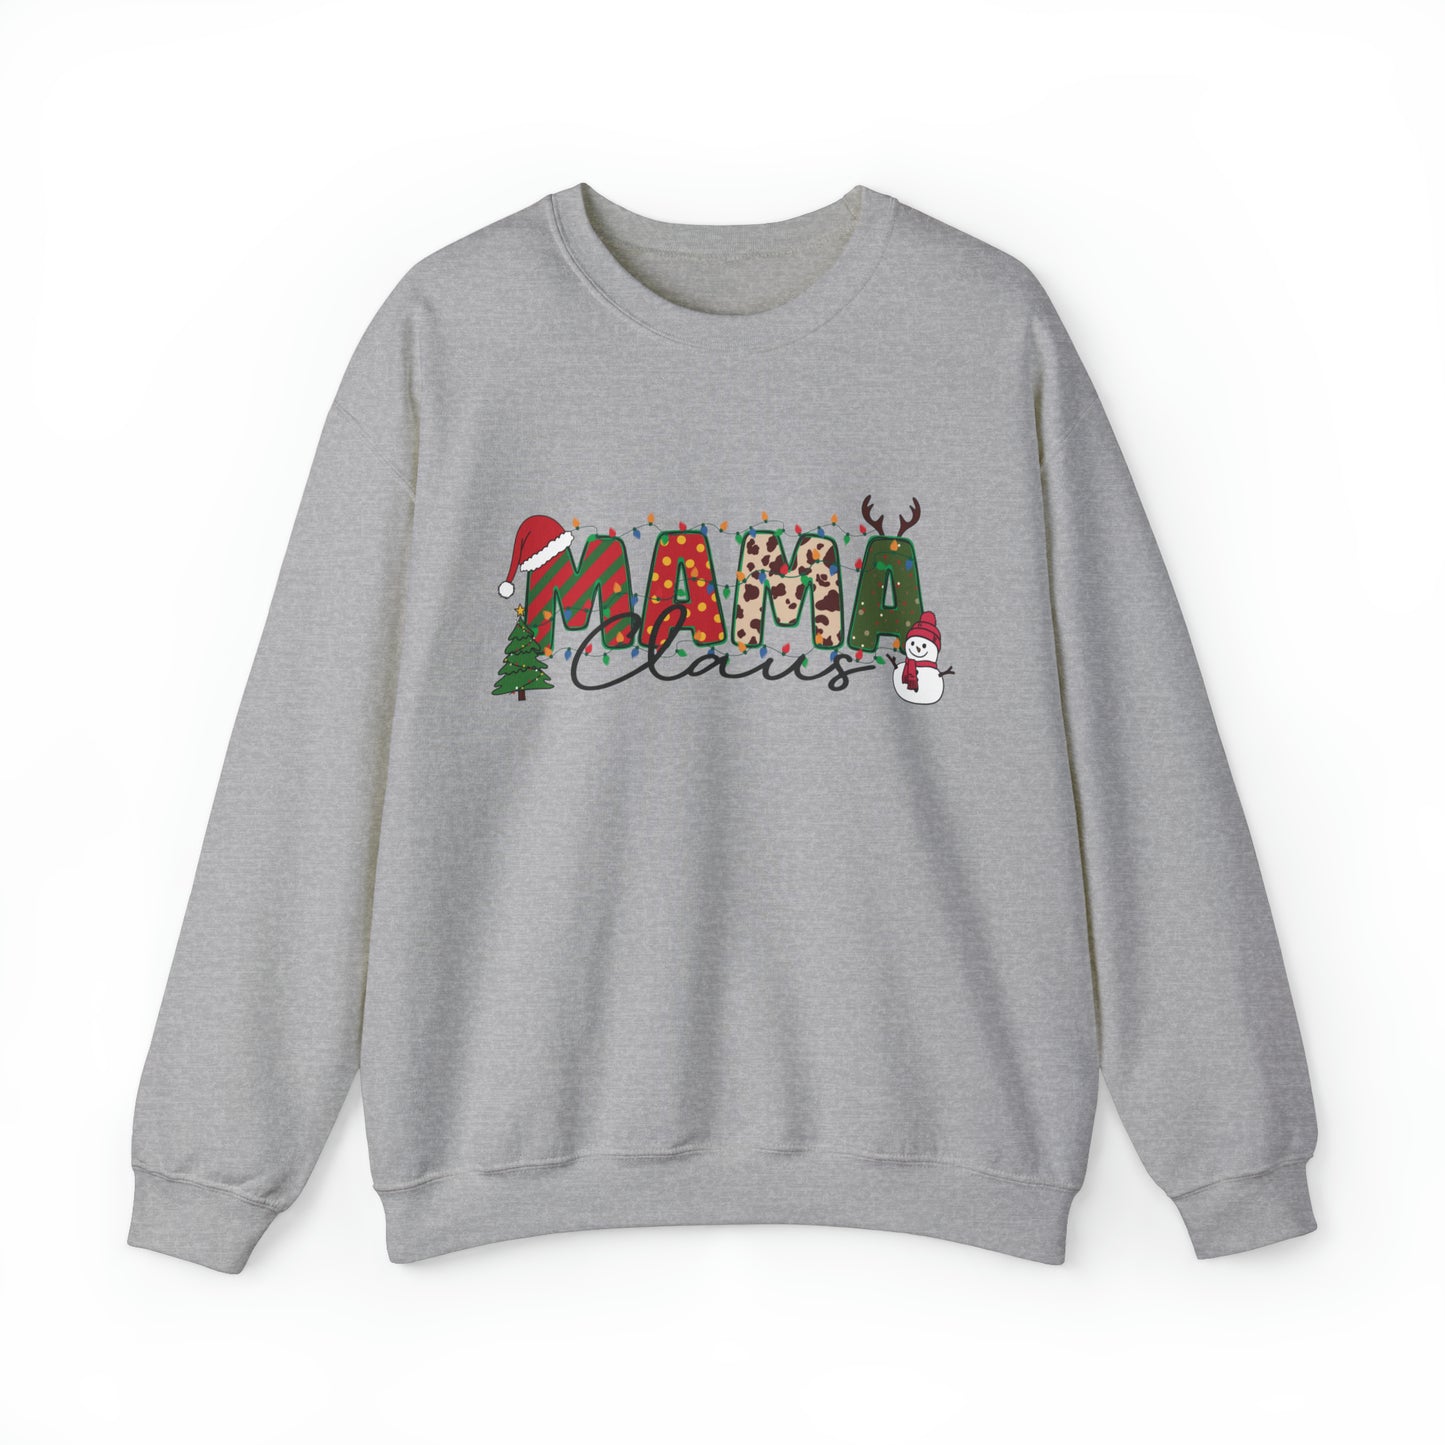 MAMA Claus Women's Christmas Sweatshirt